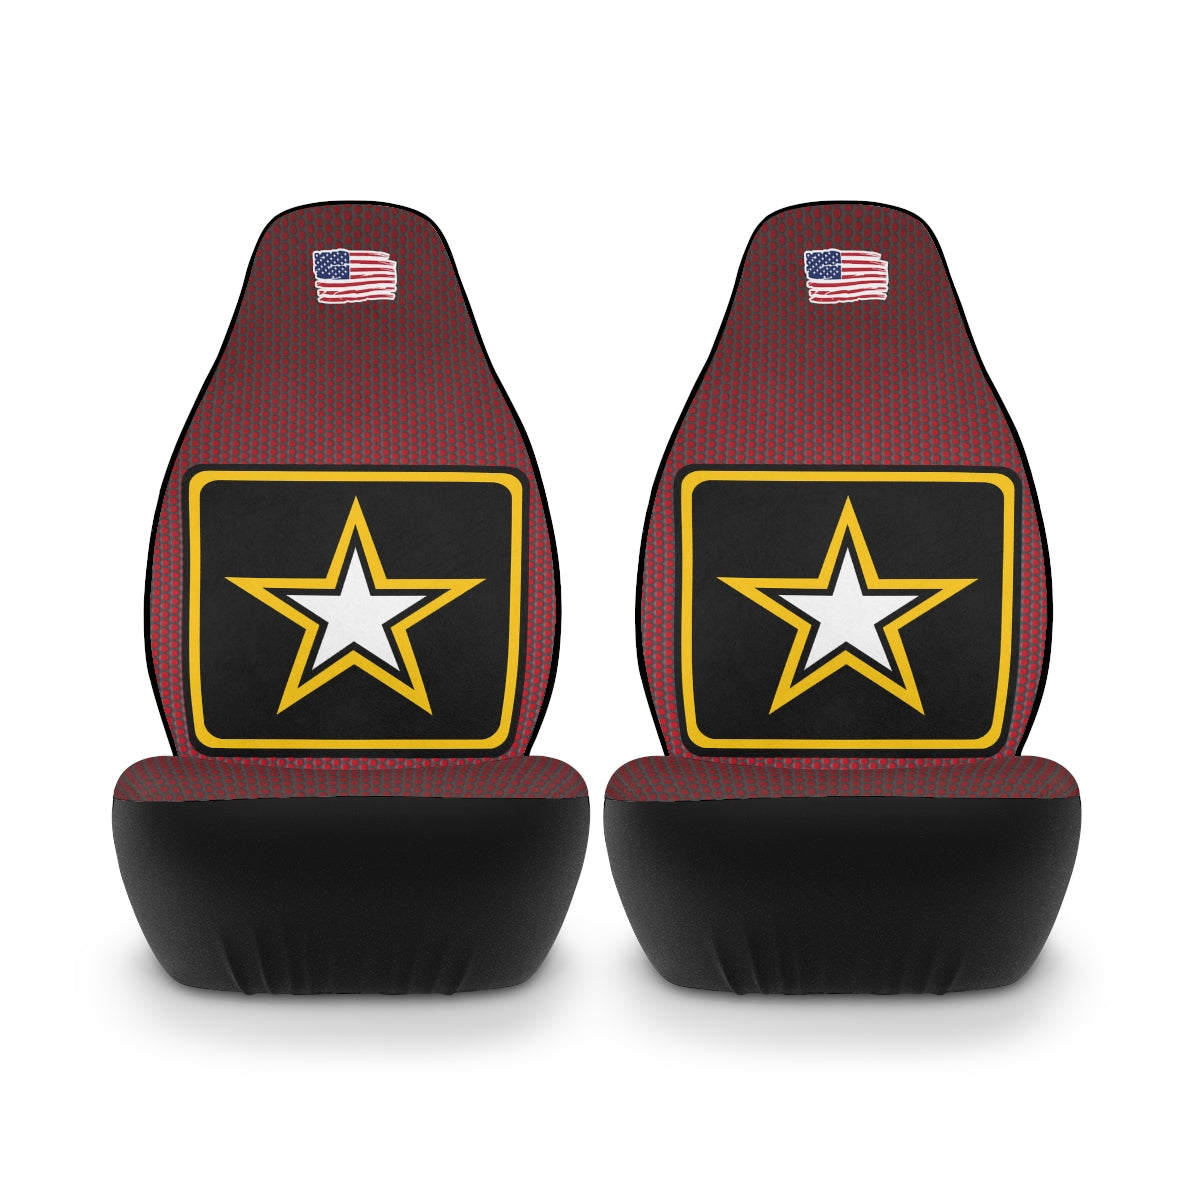 Fundas de asiento de coche de poliéster rojo oscuro del ejército de EE. UU. (logotipo 2)